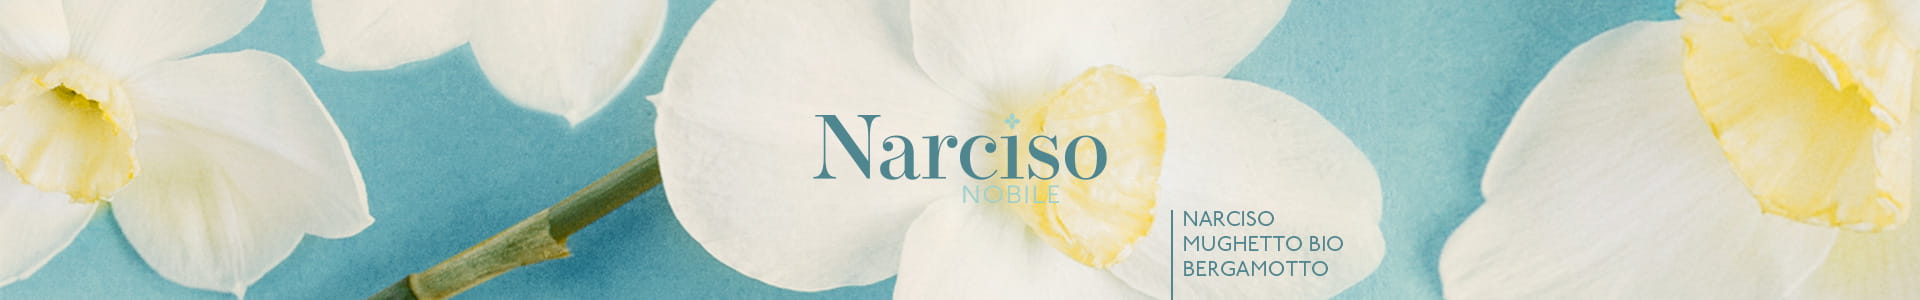 Narciso-Nobile